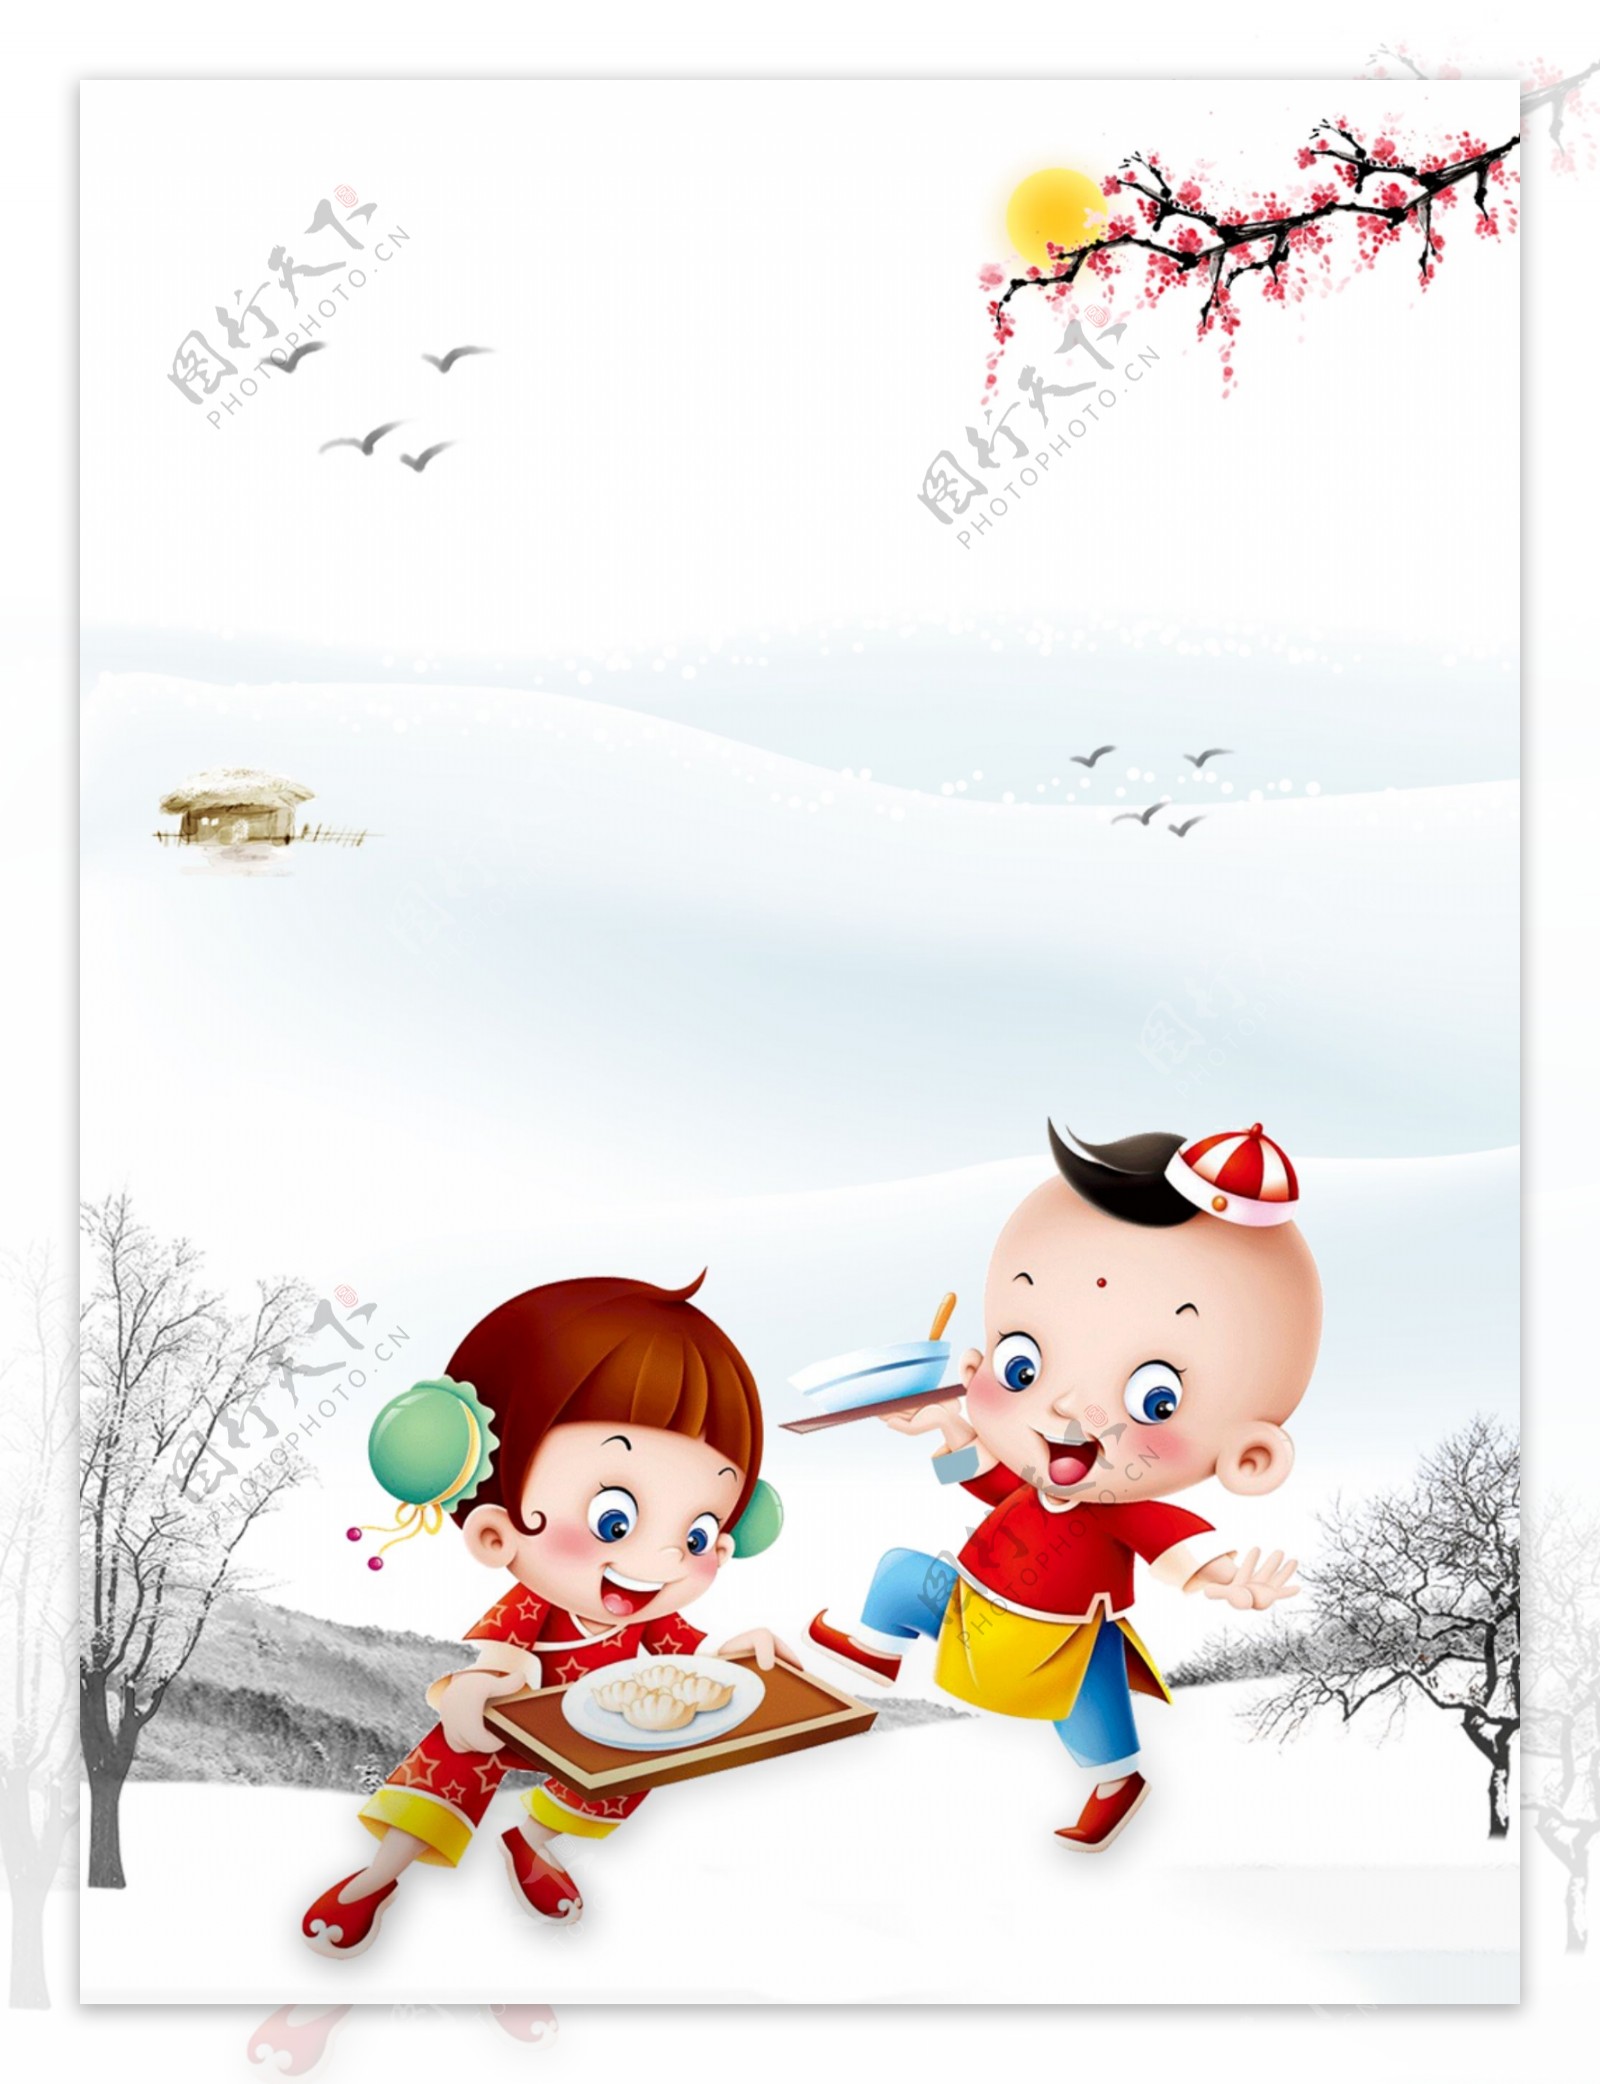 冬至节气雪地上吃饺子的儿童背景